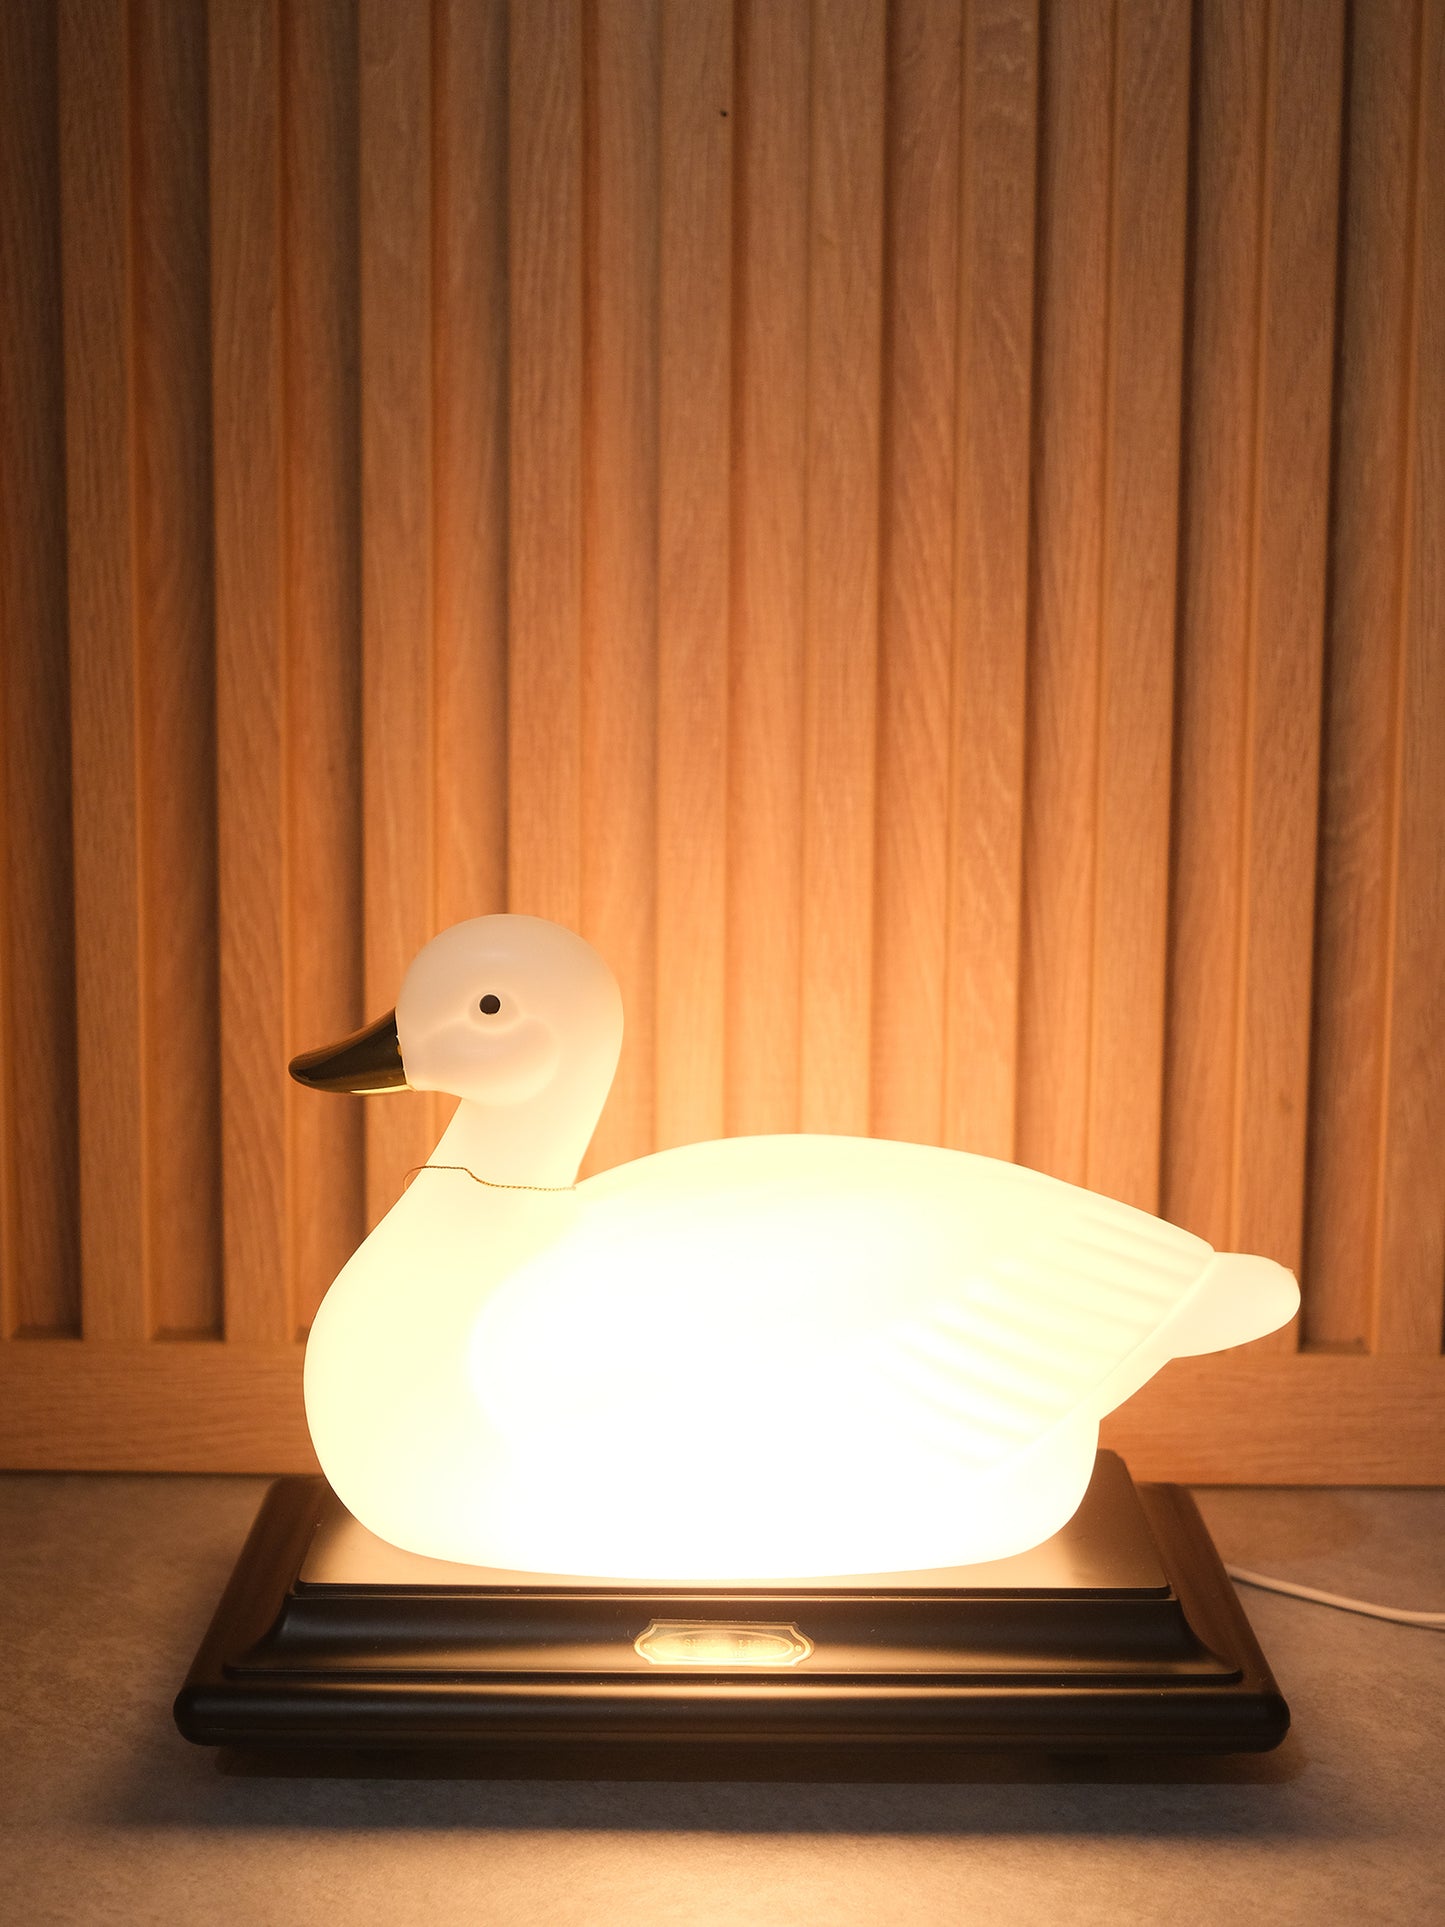 日本 昭和 鴨子 Touch Sensor Light 三色 觸摸感應燈 擡燈 Lamp Light